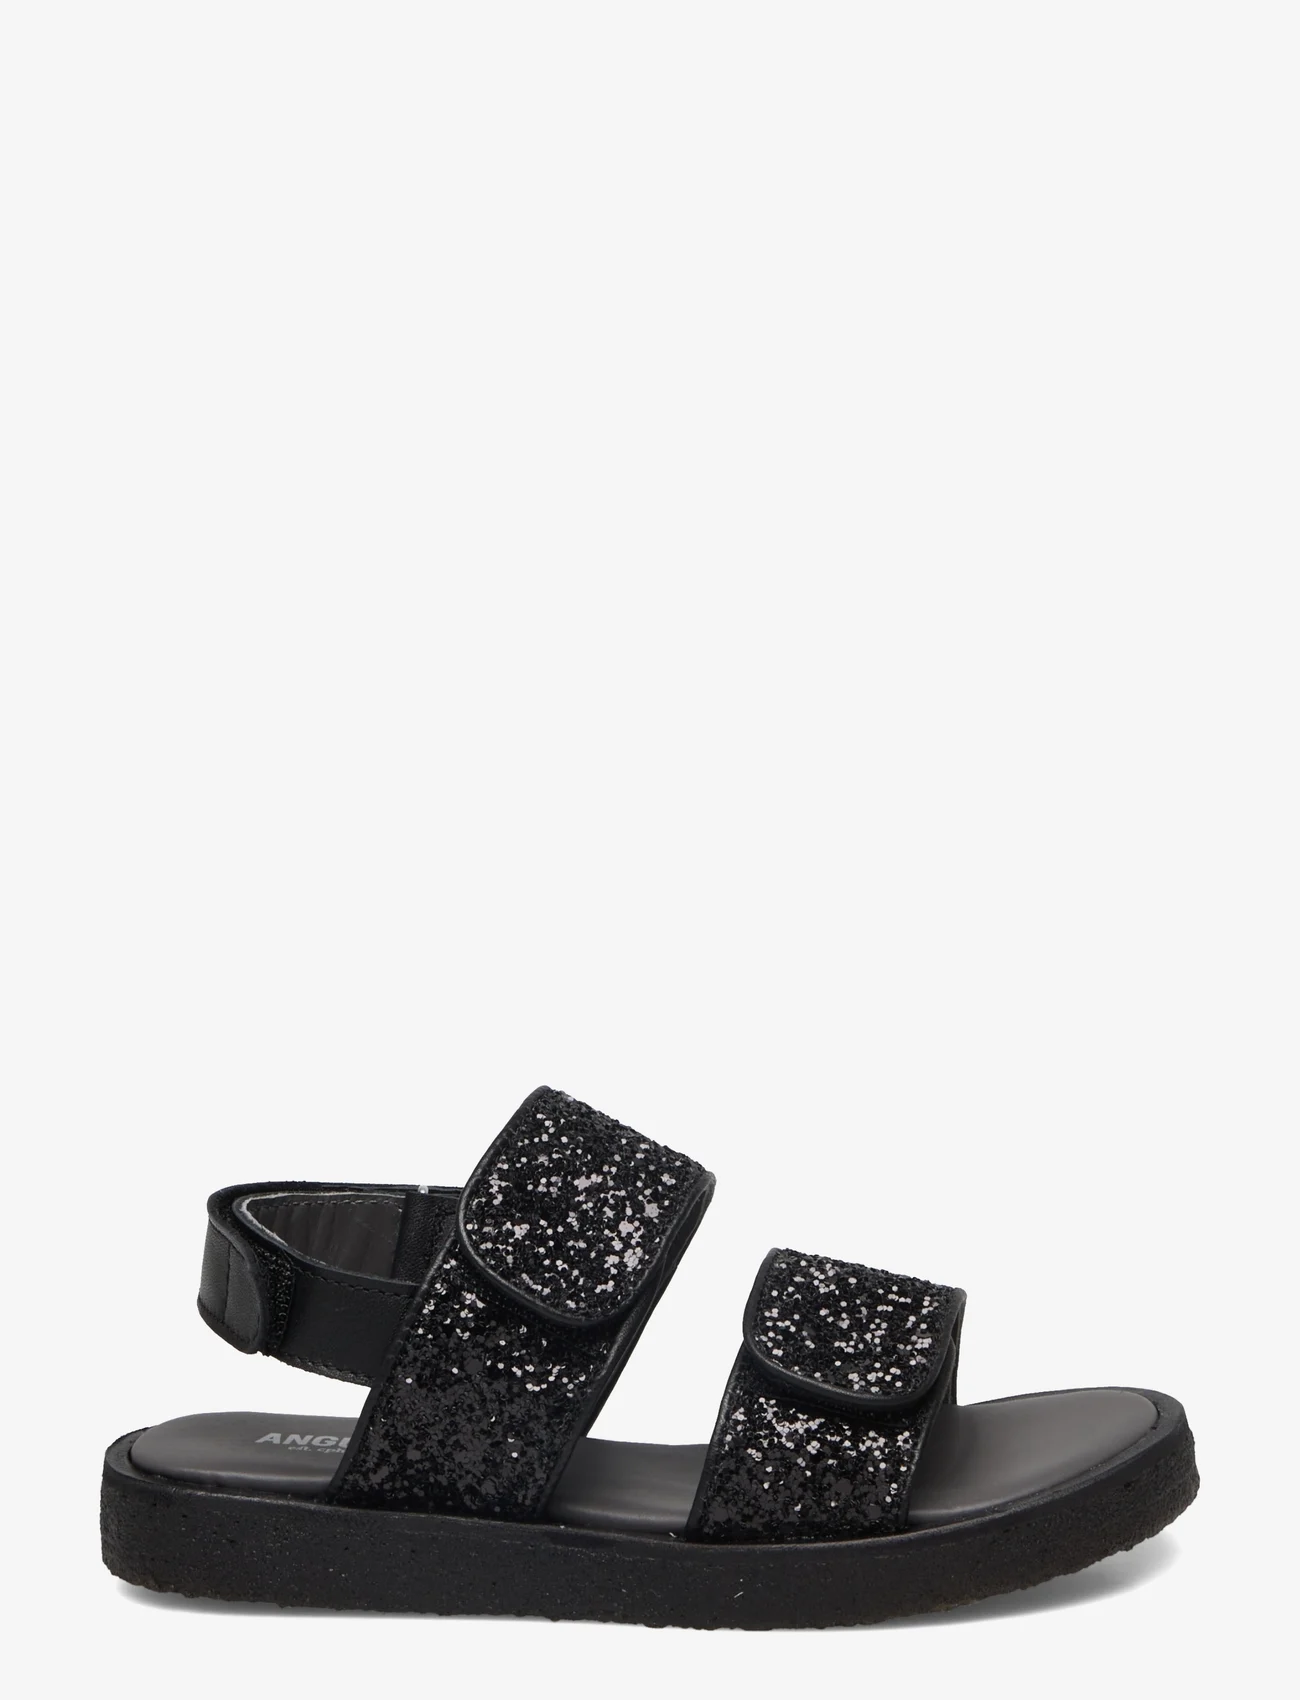 ANGULUS - Sandals - flat - open toe - op - sommerschnäppchen - 1604/2486 black/black glitter - 1